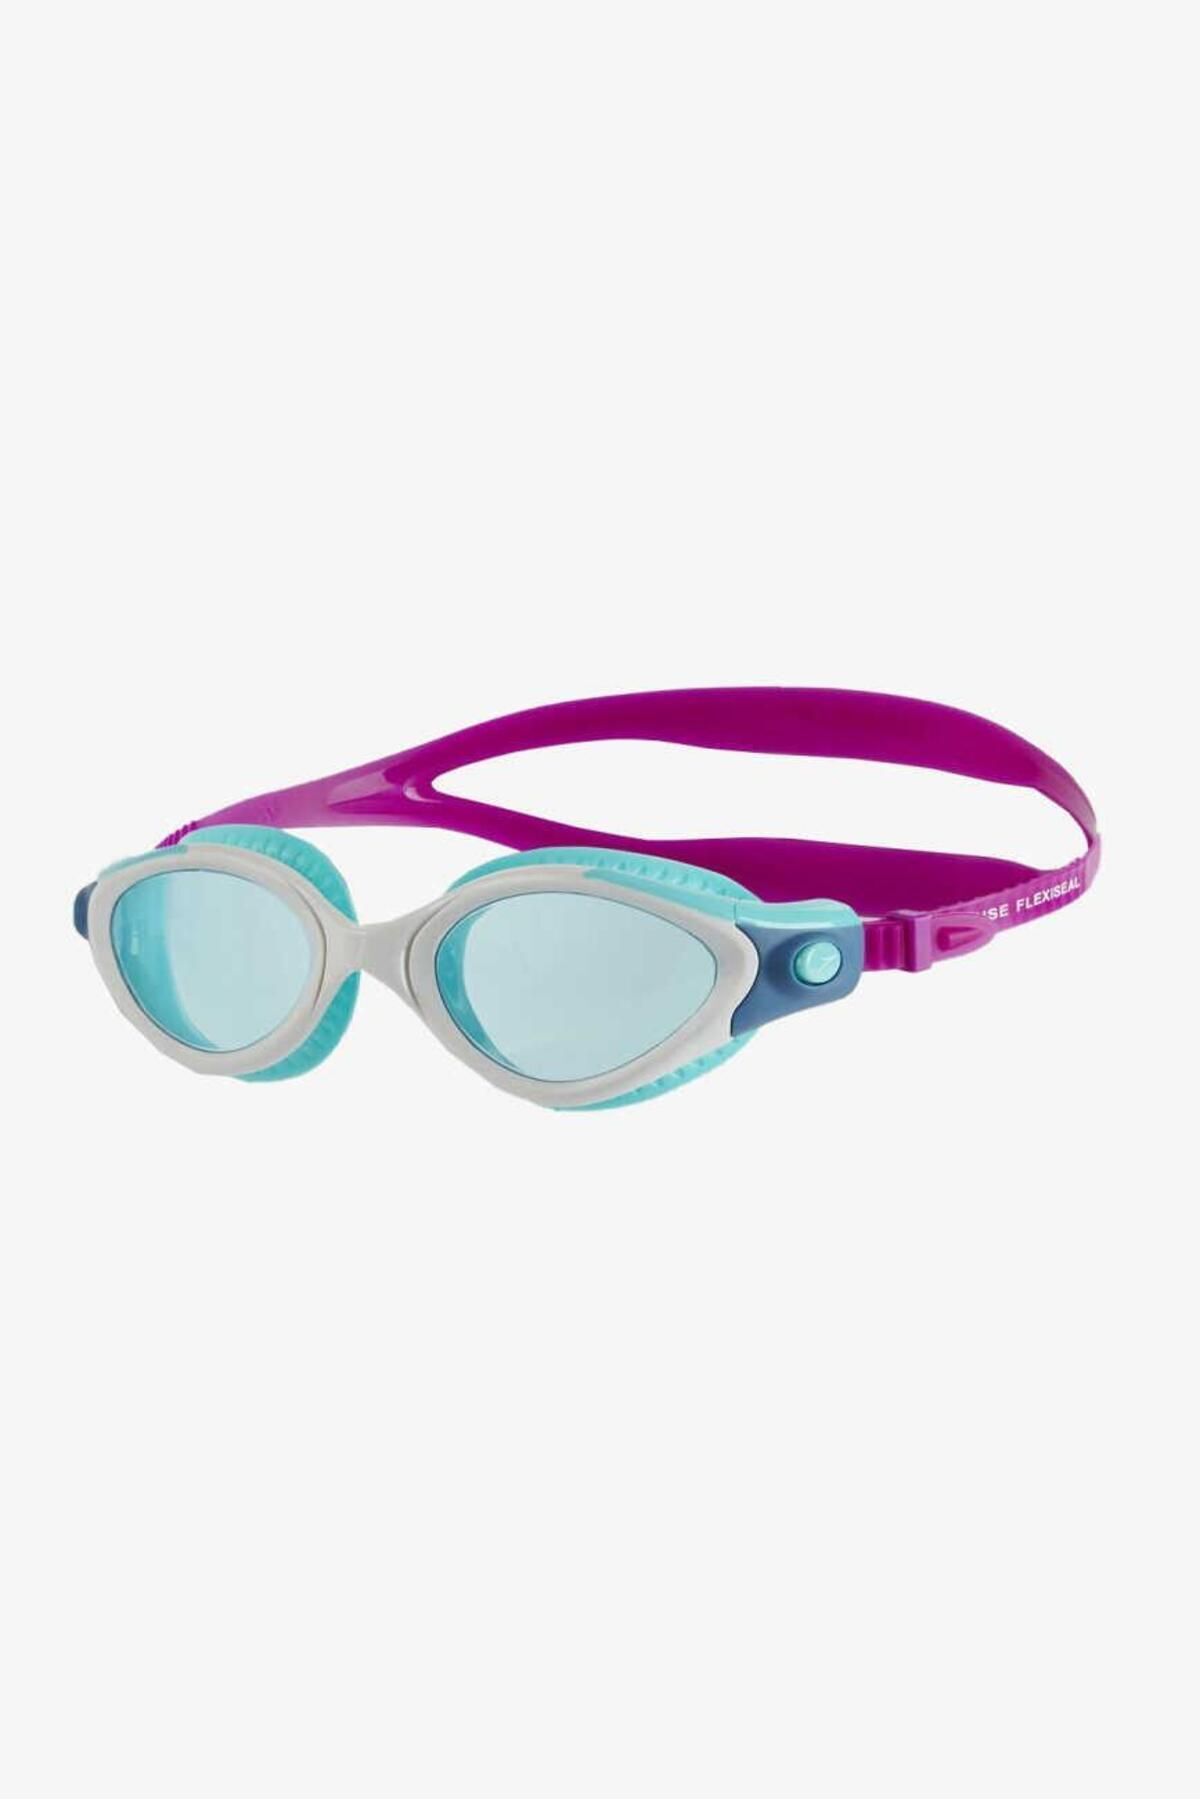 SPEEDO Fut Bıof Fseal Dual Gog Af Purpblu Purple Kadın Gözlük 8-11314b978